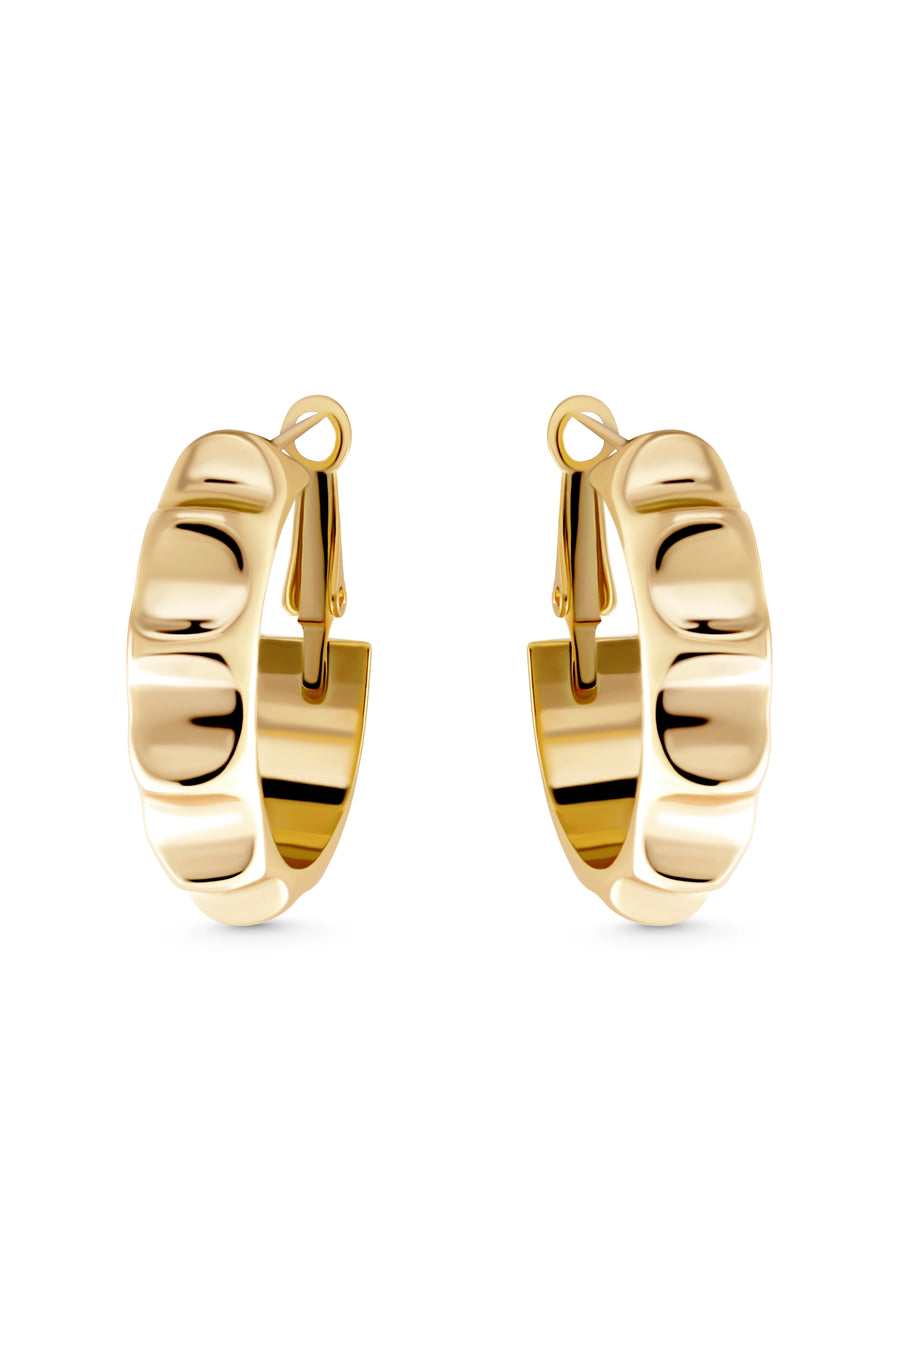 GALAXY Hoops. Radial-shaped hoop earrings, 18K gold vermeil, handmade, hypoallergenic, water-resistant